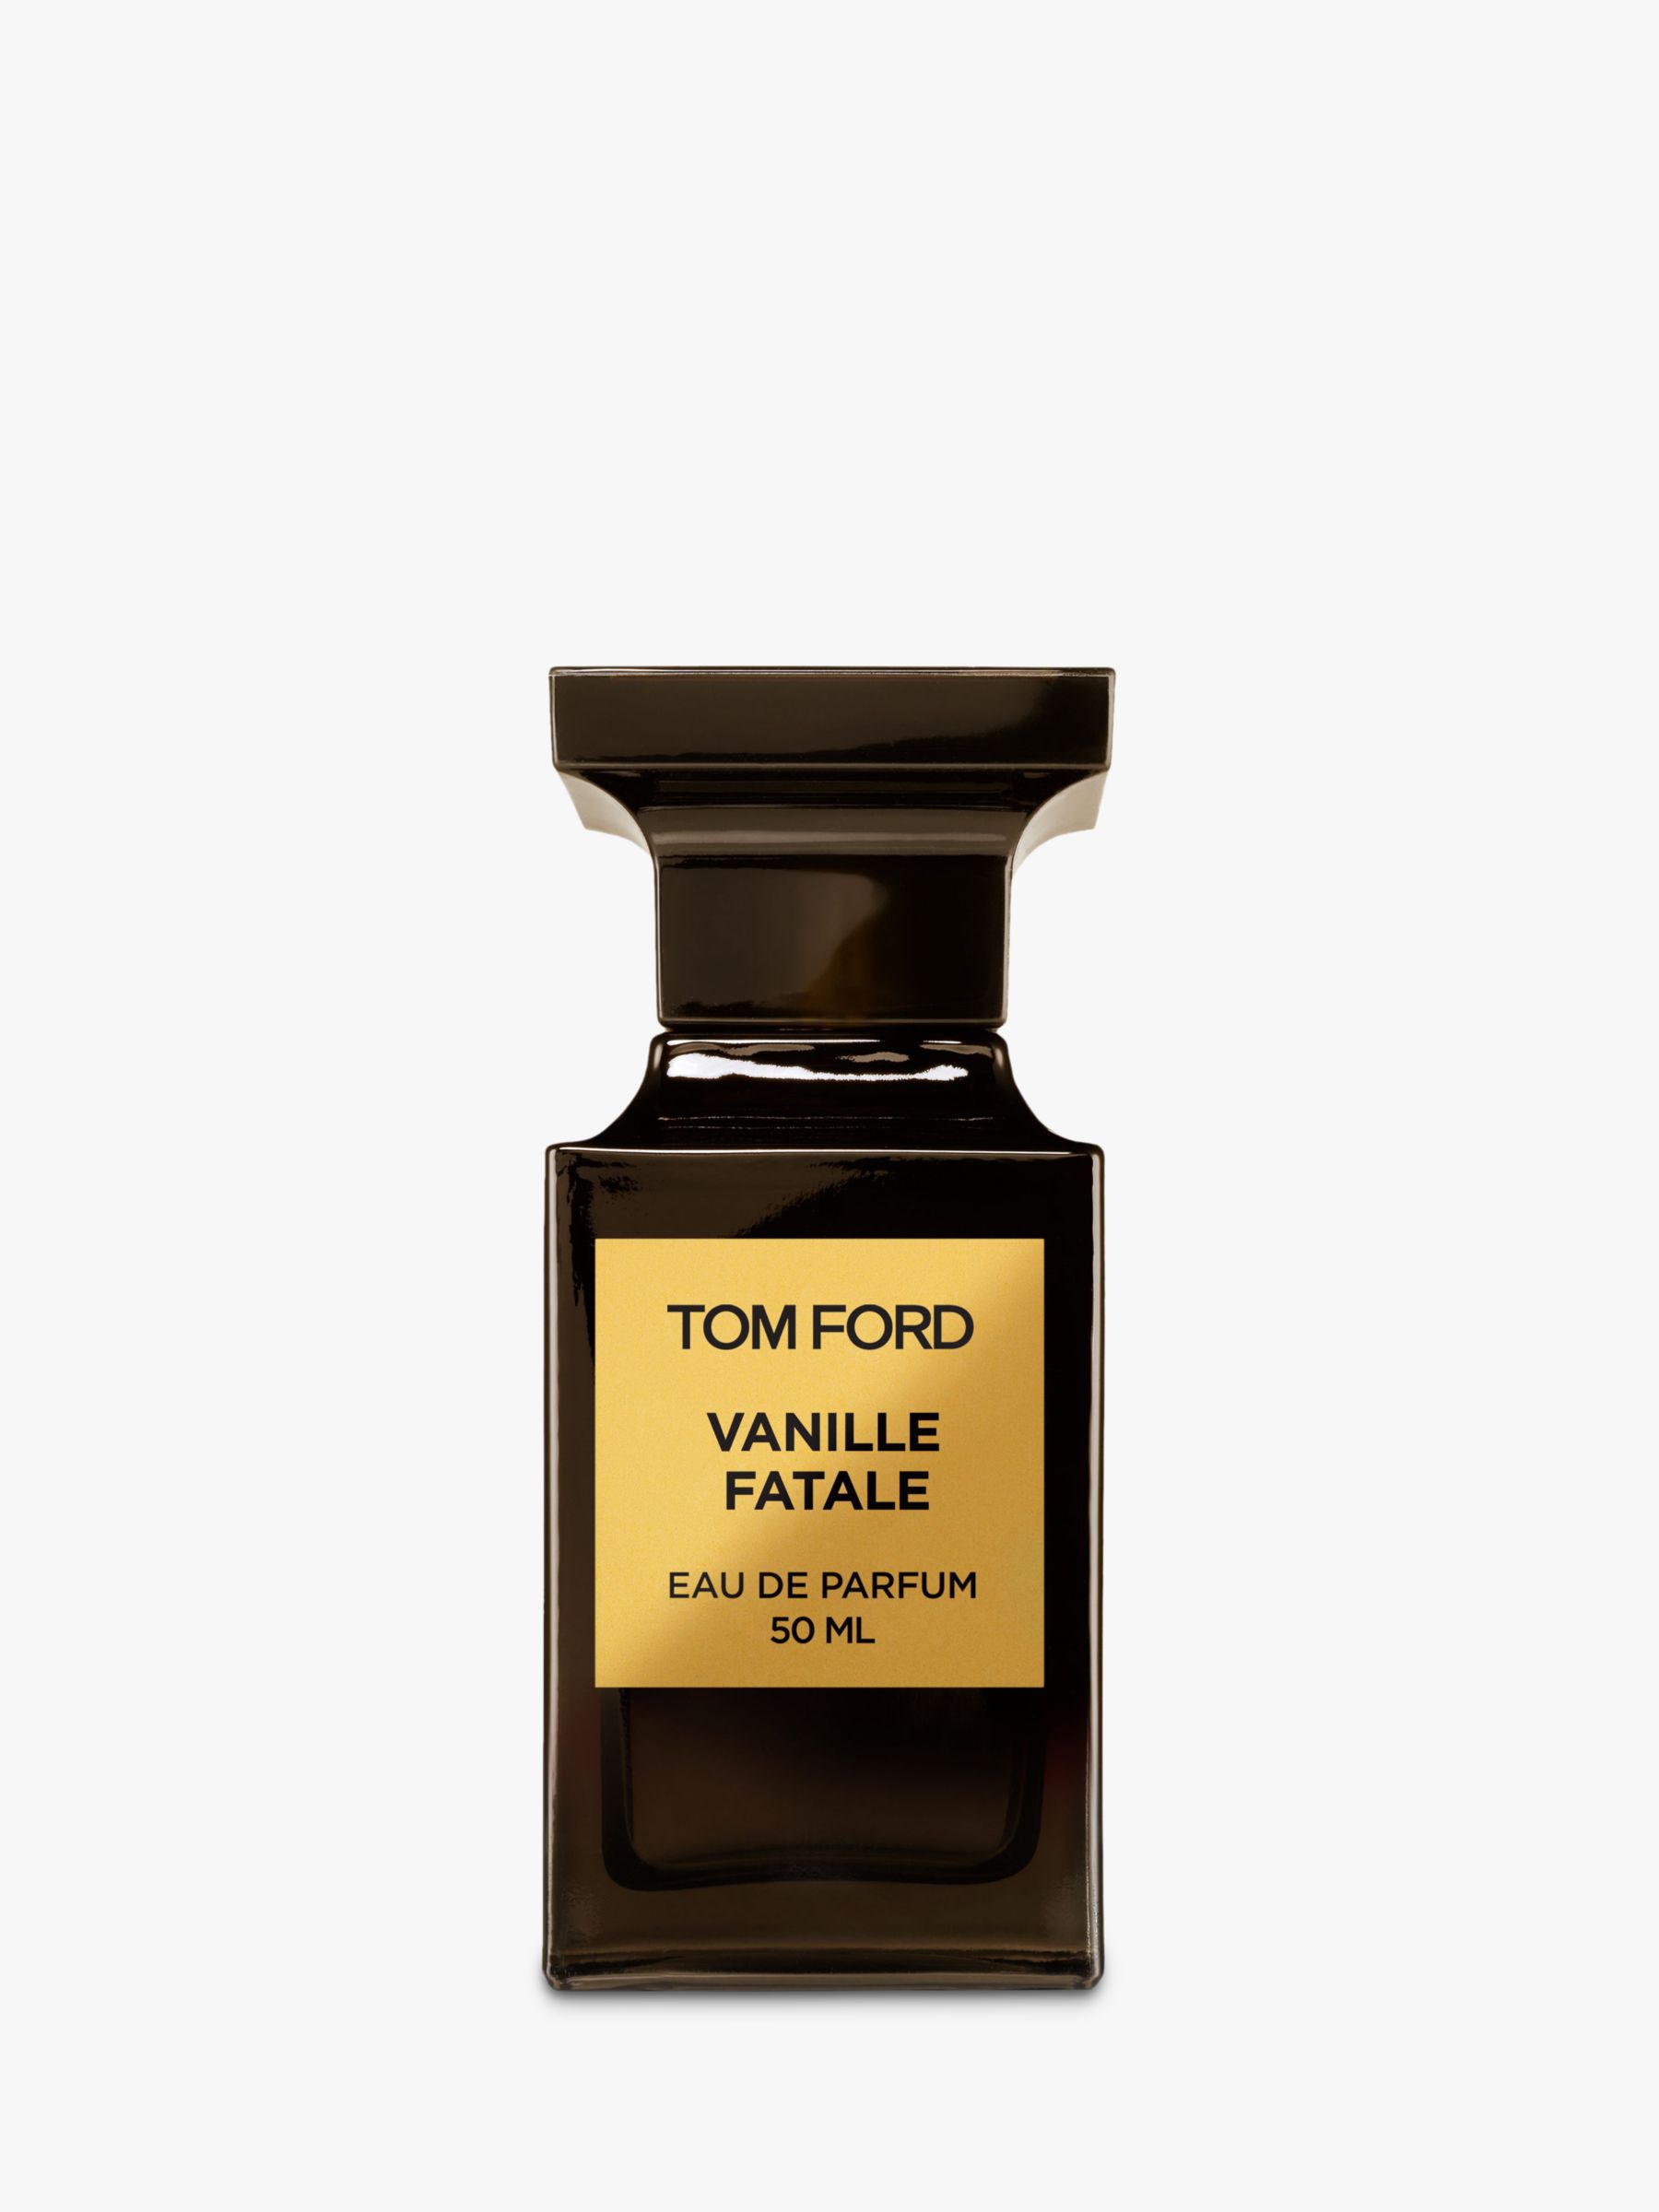 TOM FORD Private Blend Vanille Fatale Eau de Parfum, 50ml at John Lewis &  Partners